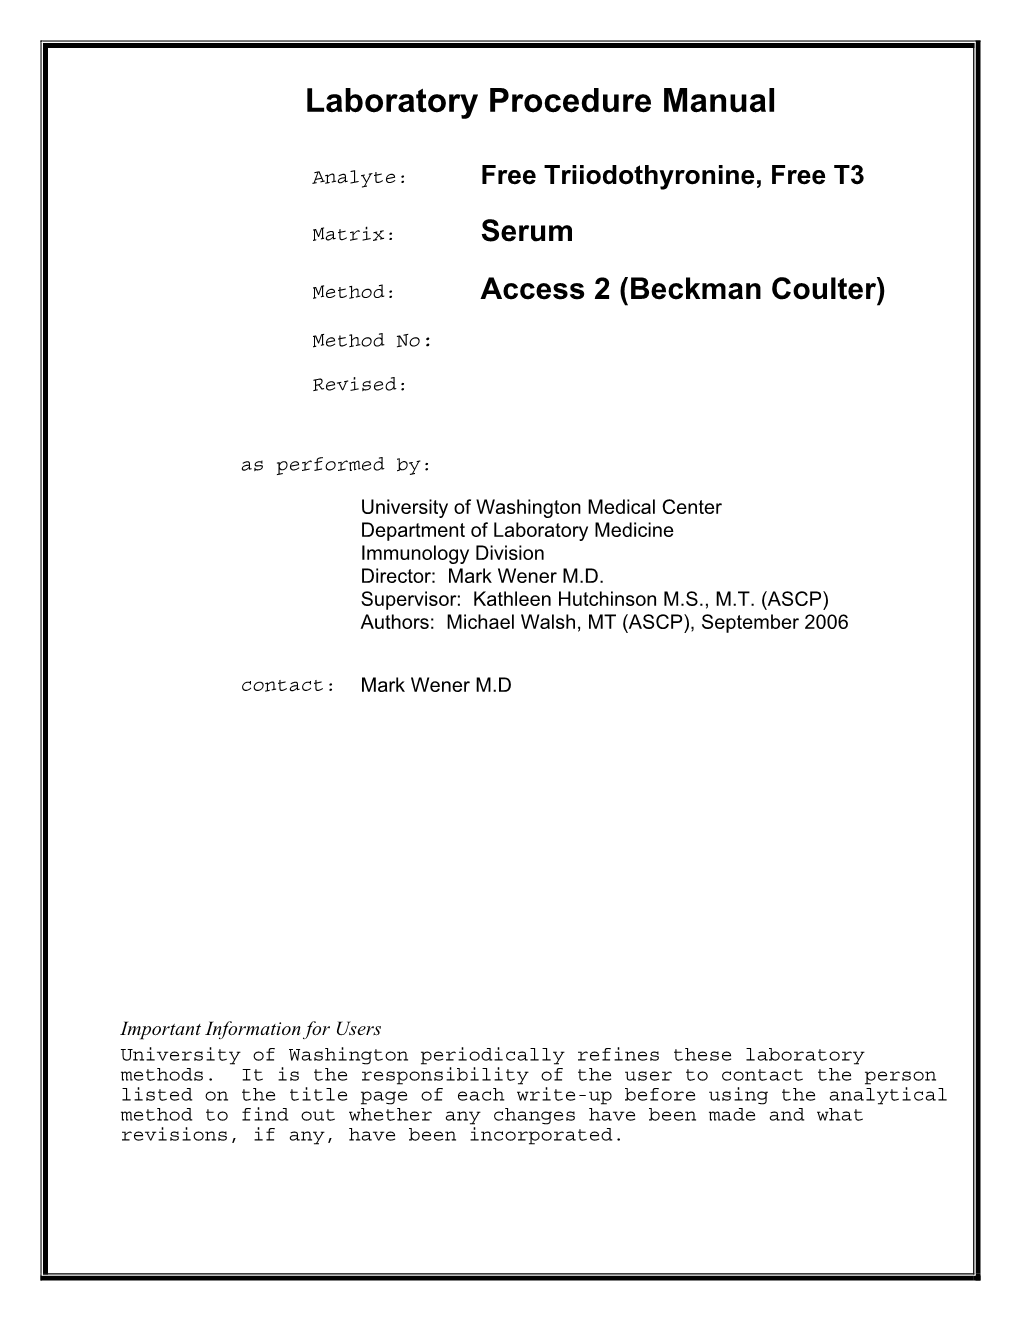 Free Triiodothyronine, Free T3